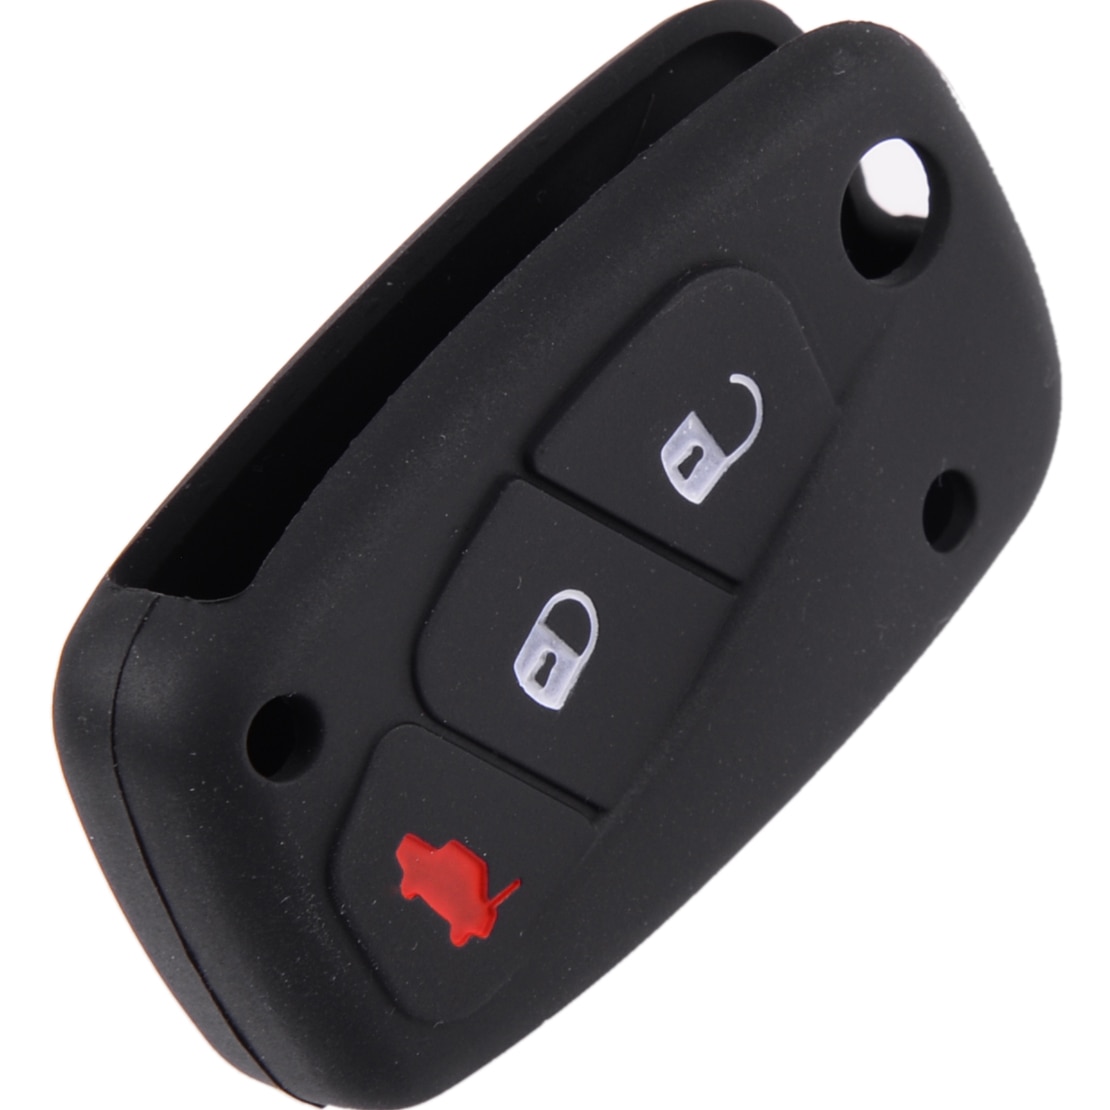 DWCX Car 3 Button Silicone Remote Key Cover Case Fob Shell Holder Fit for Fiat Punto Panda Idea Stilo 2007 Ducato